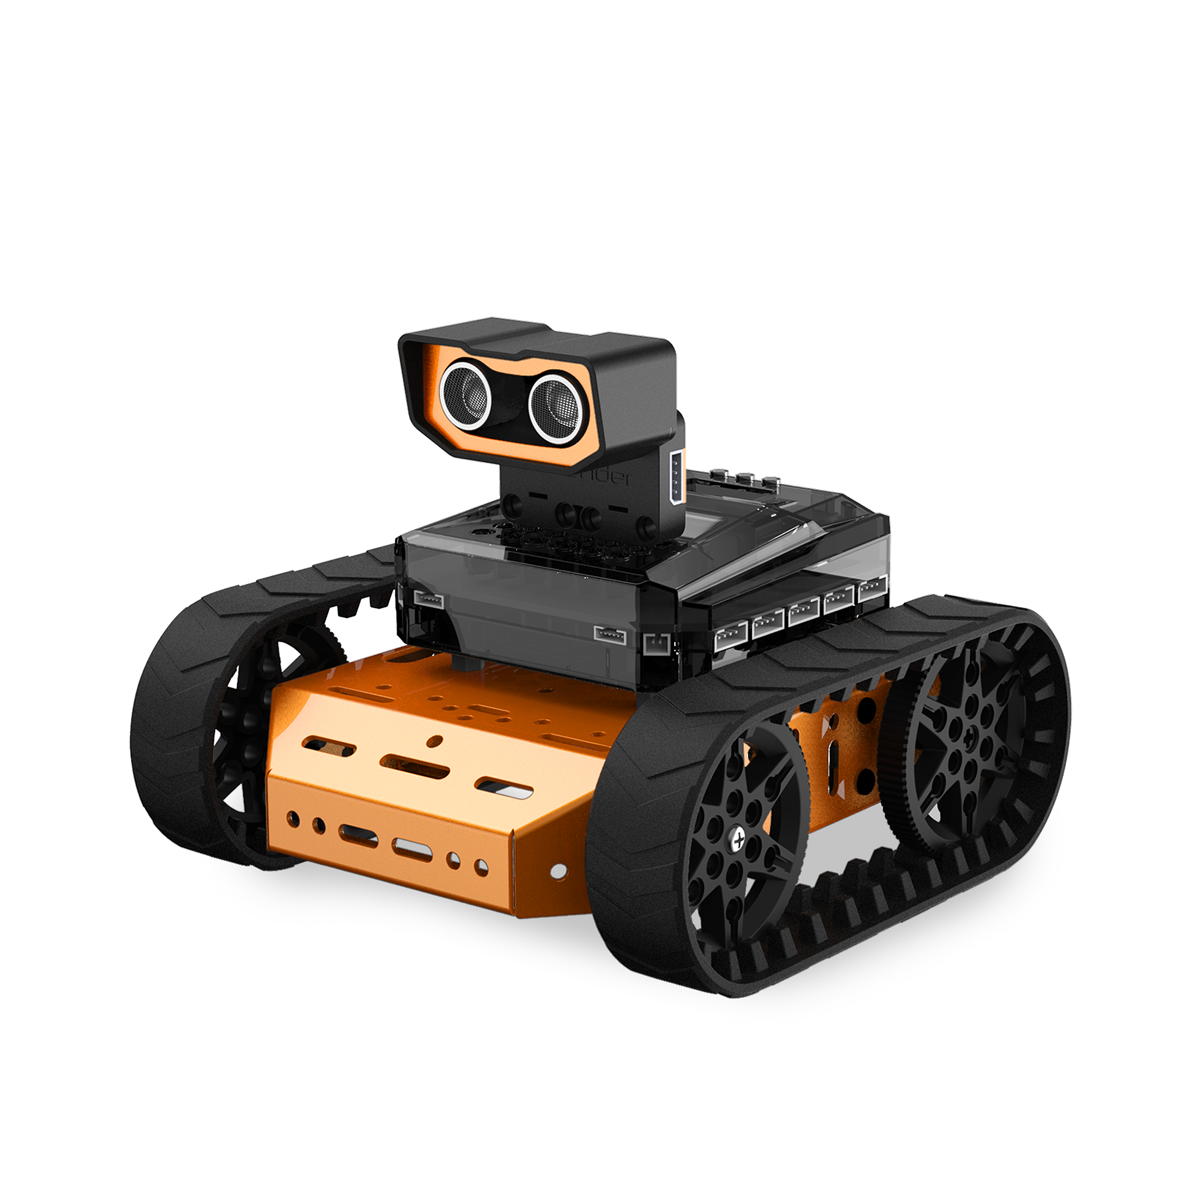 Конструктор для сборки механических моделей с камерой технического зрения Гусеничный робот